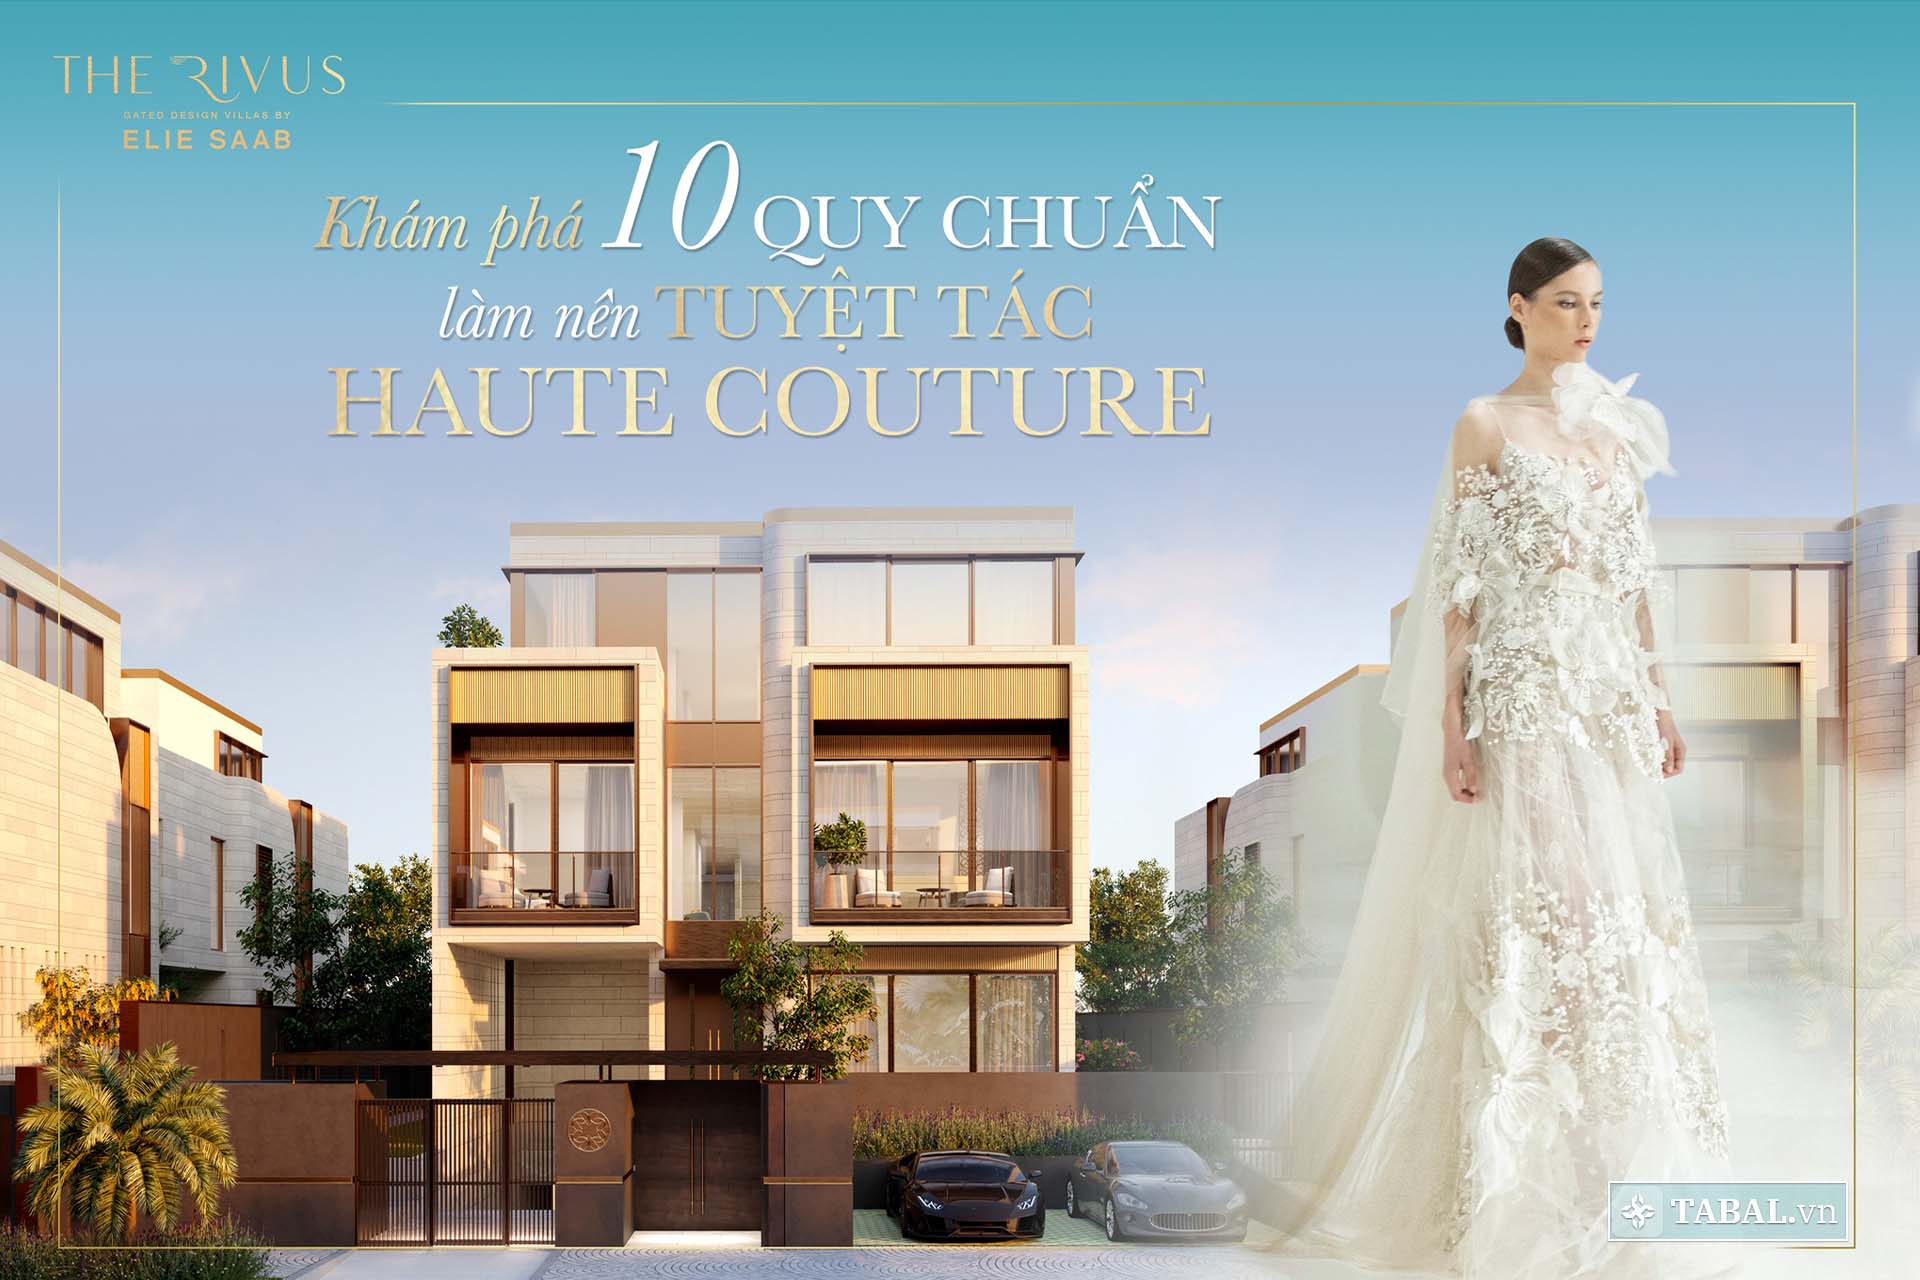 THE RIVUS | Khu dinh thự Haute Couture đầu tiên tại Châu Á